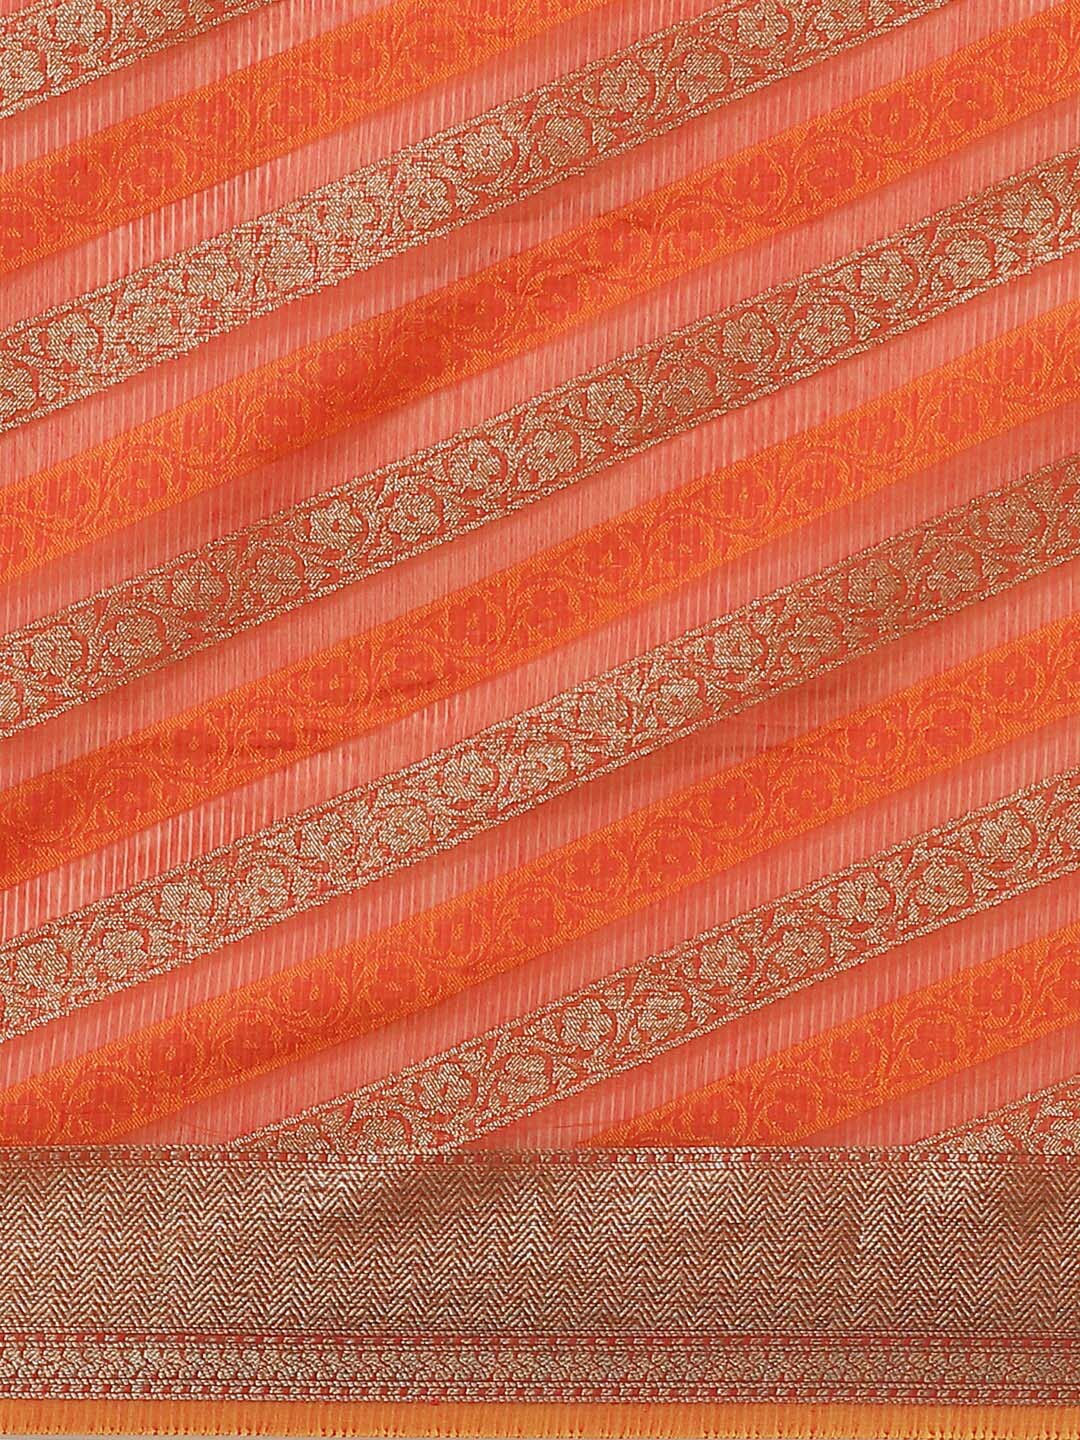 Indethnic Banarasi Rust Woven Design Daily Wear Saree - View 3